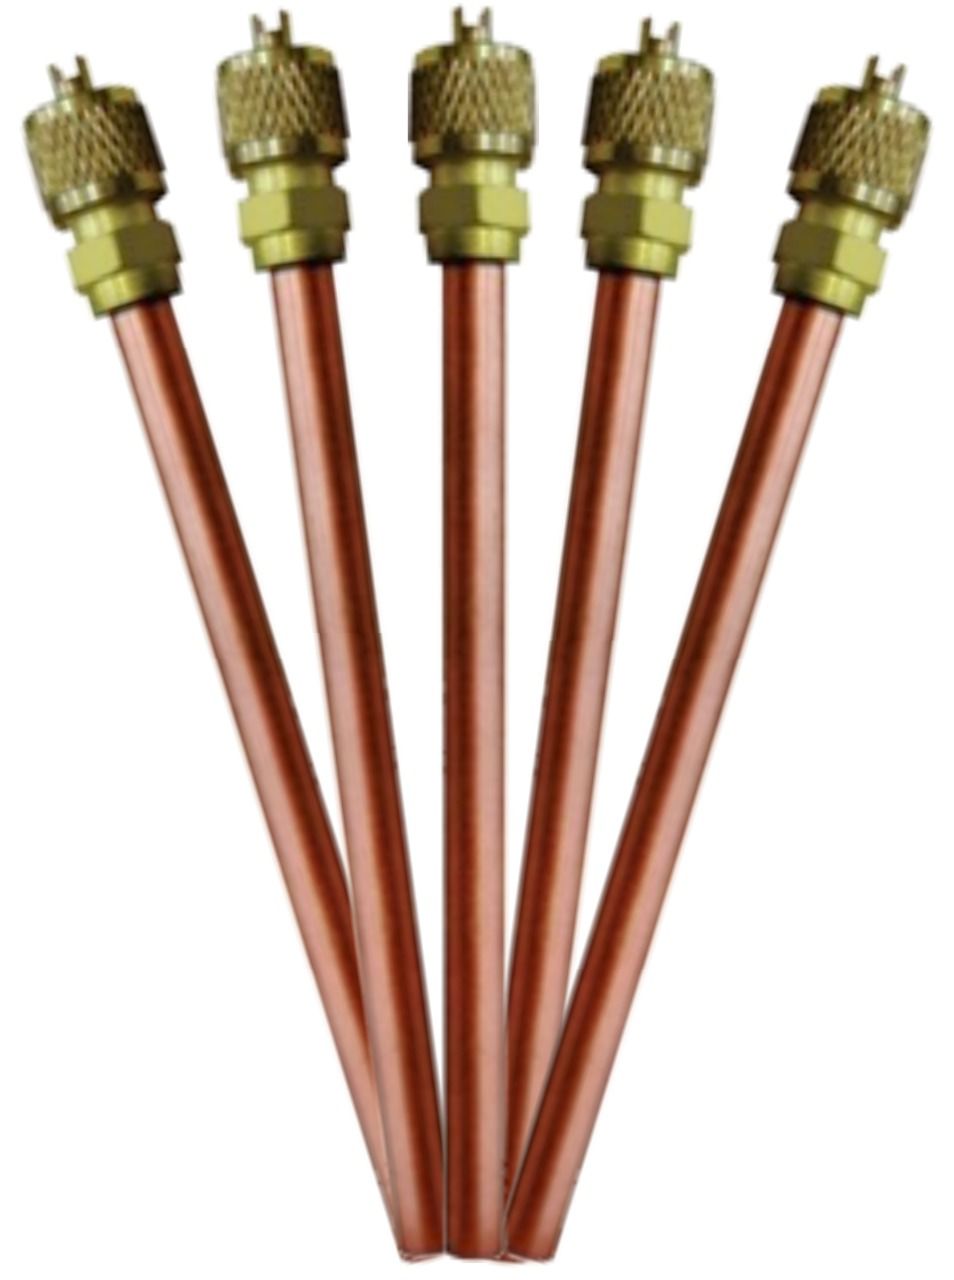 União Válvula Schrader com cano de cobre 1/4 Coldpac - Kit com 5 peças